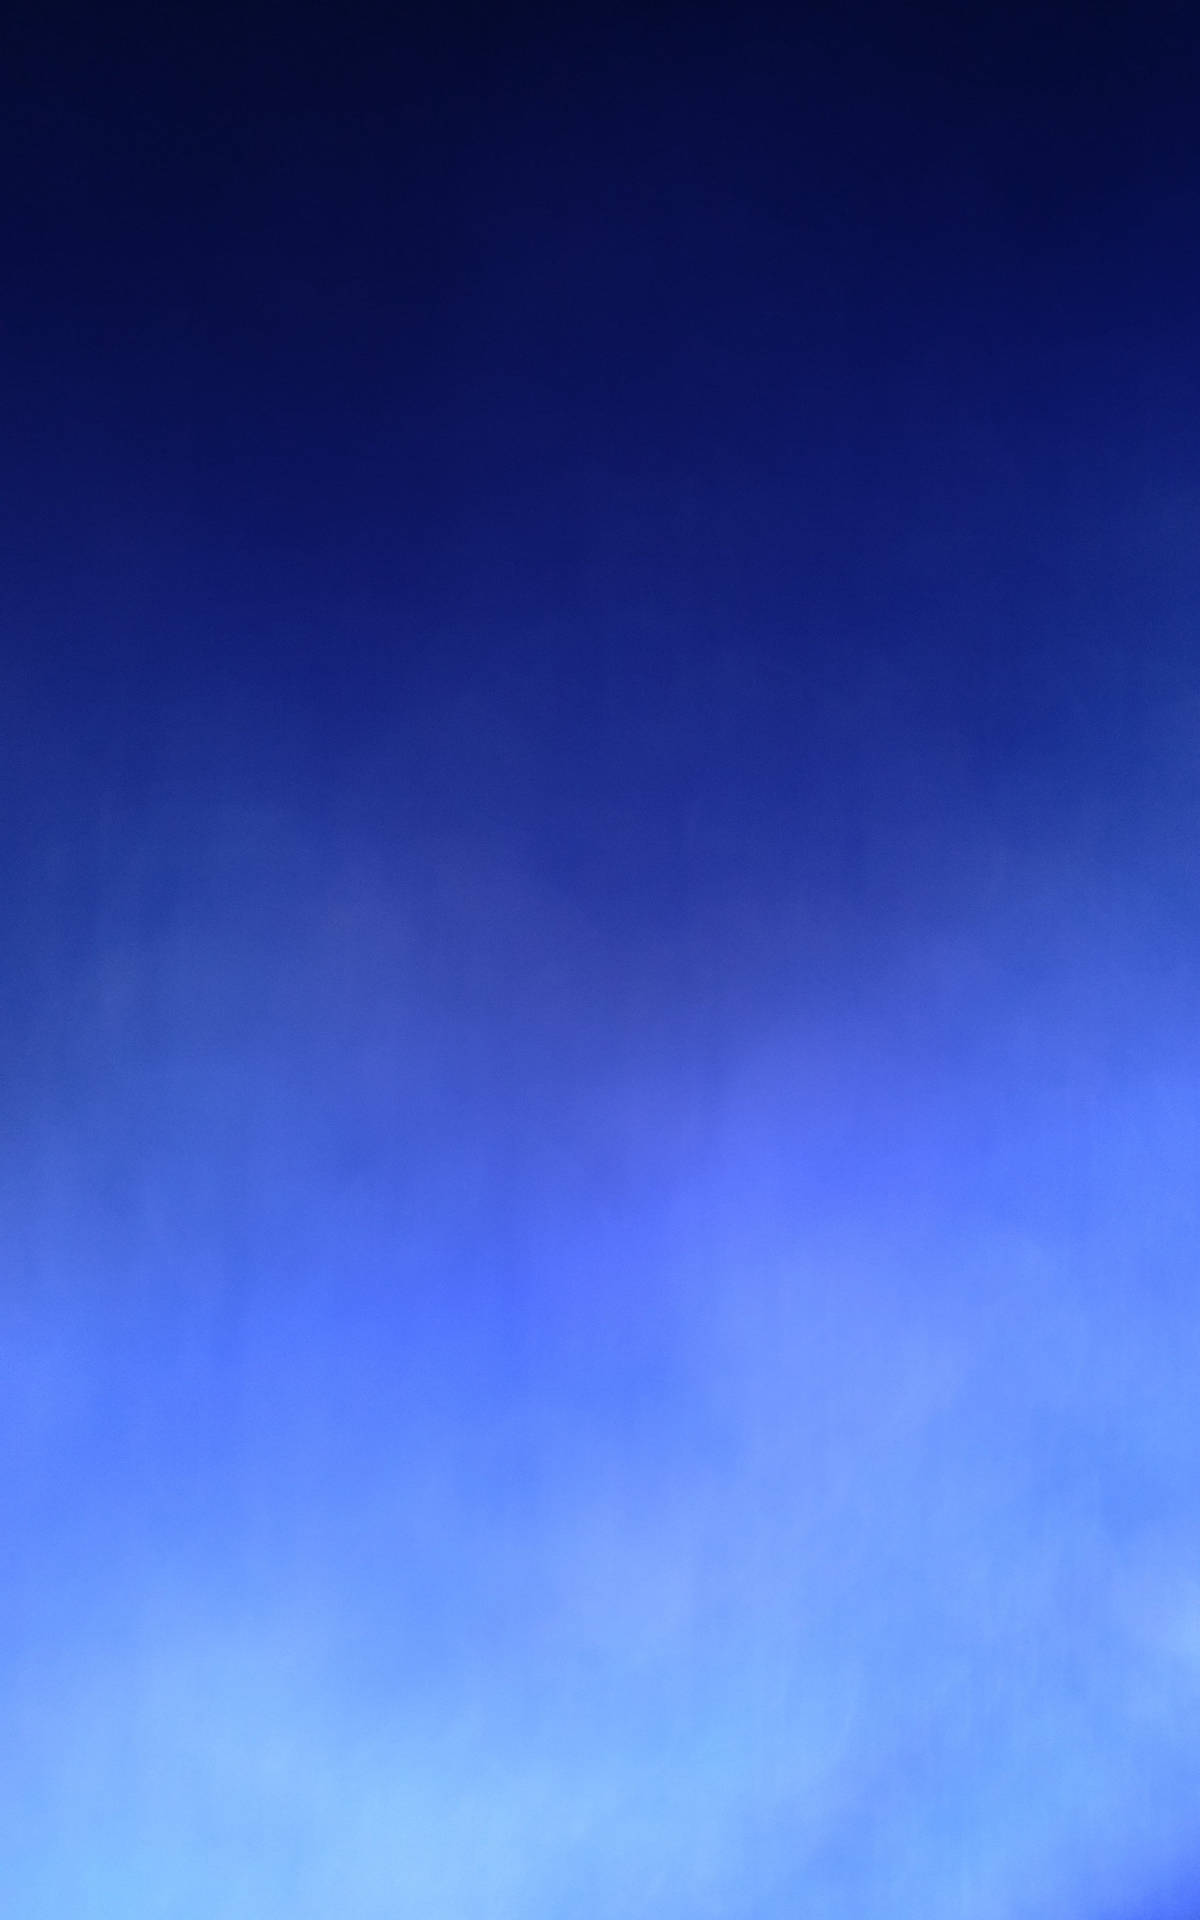 Plain Blue Cloud Gradient Background